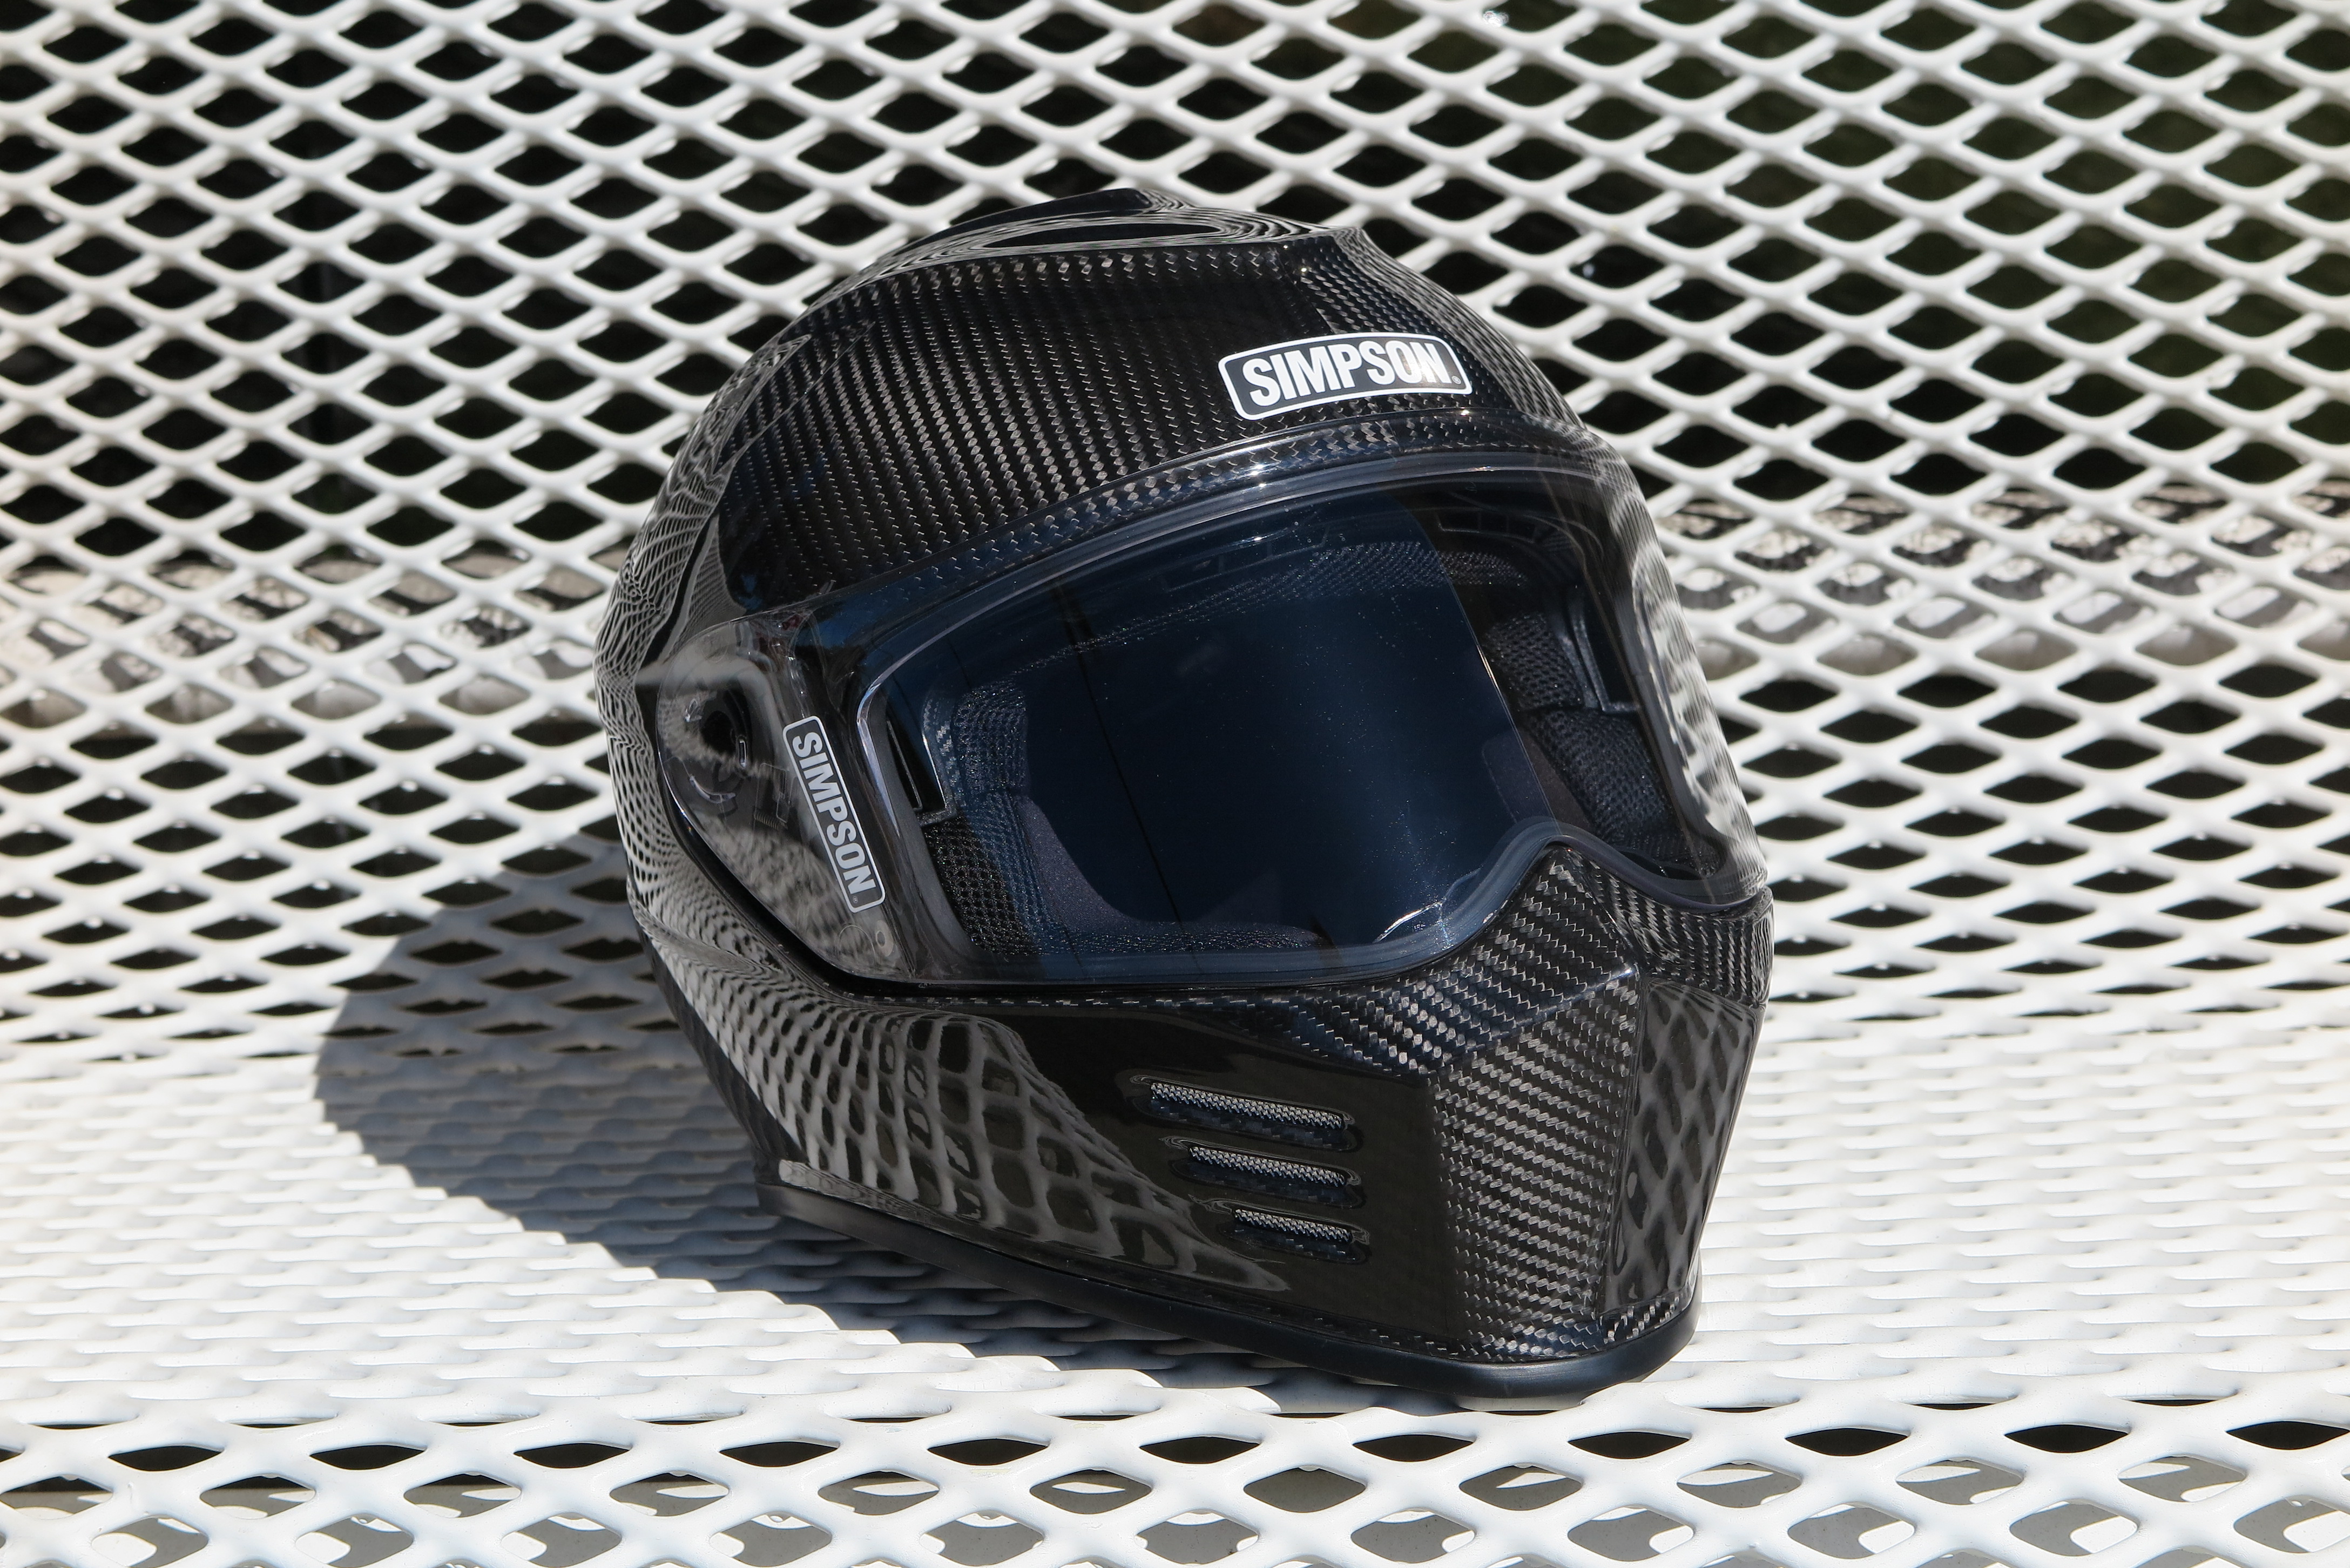 Simpson Ghost Bandit Carbon Helmet review